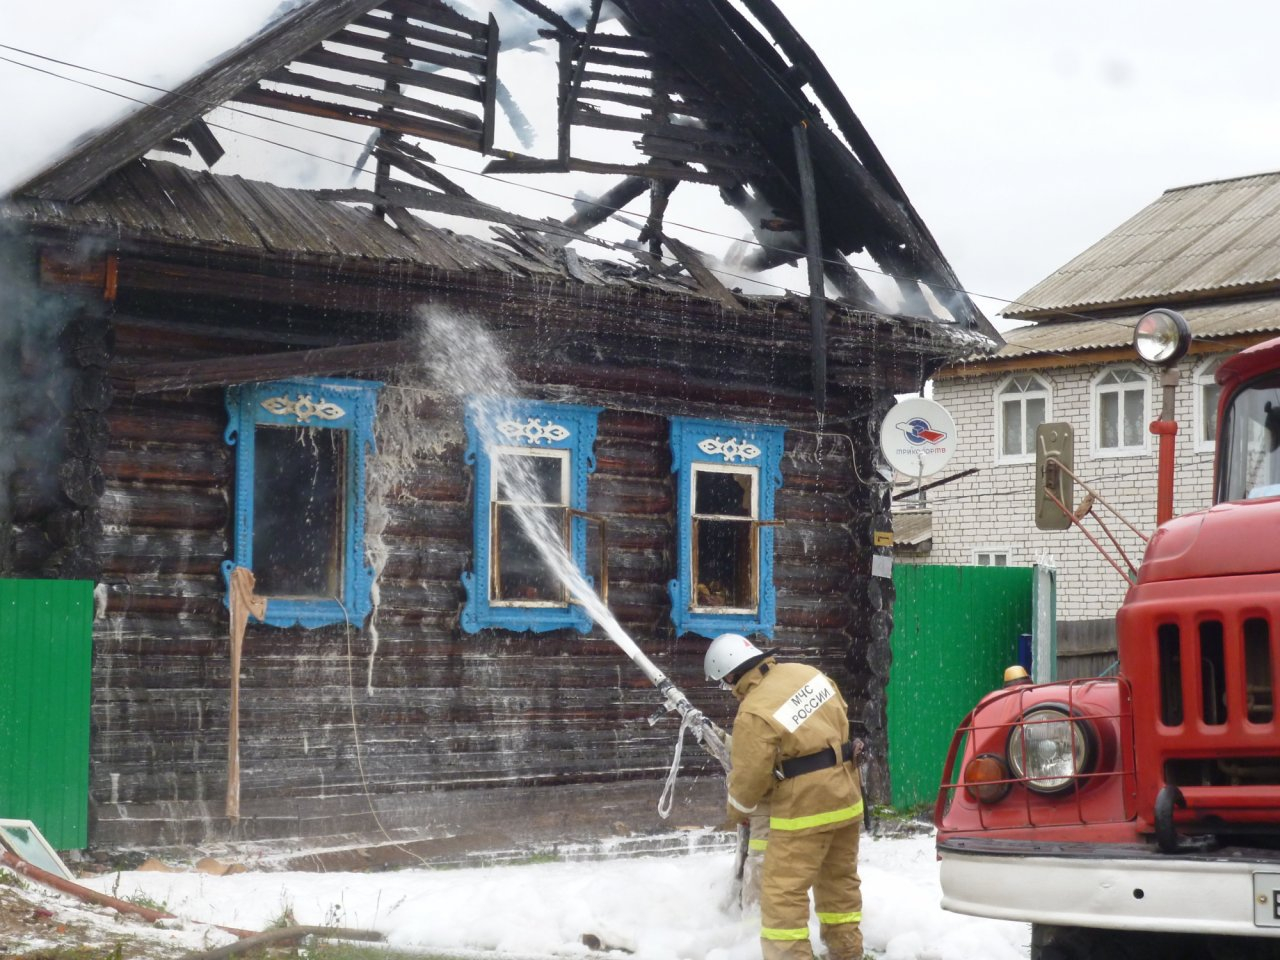 В Медведевском районе Марий Эл сгорел частный дом: есть пострадавший